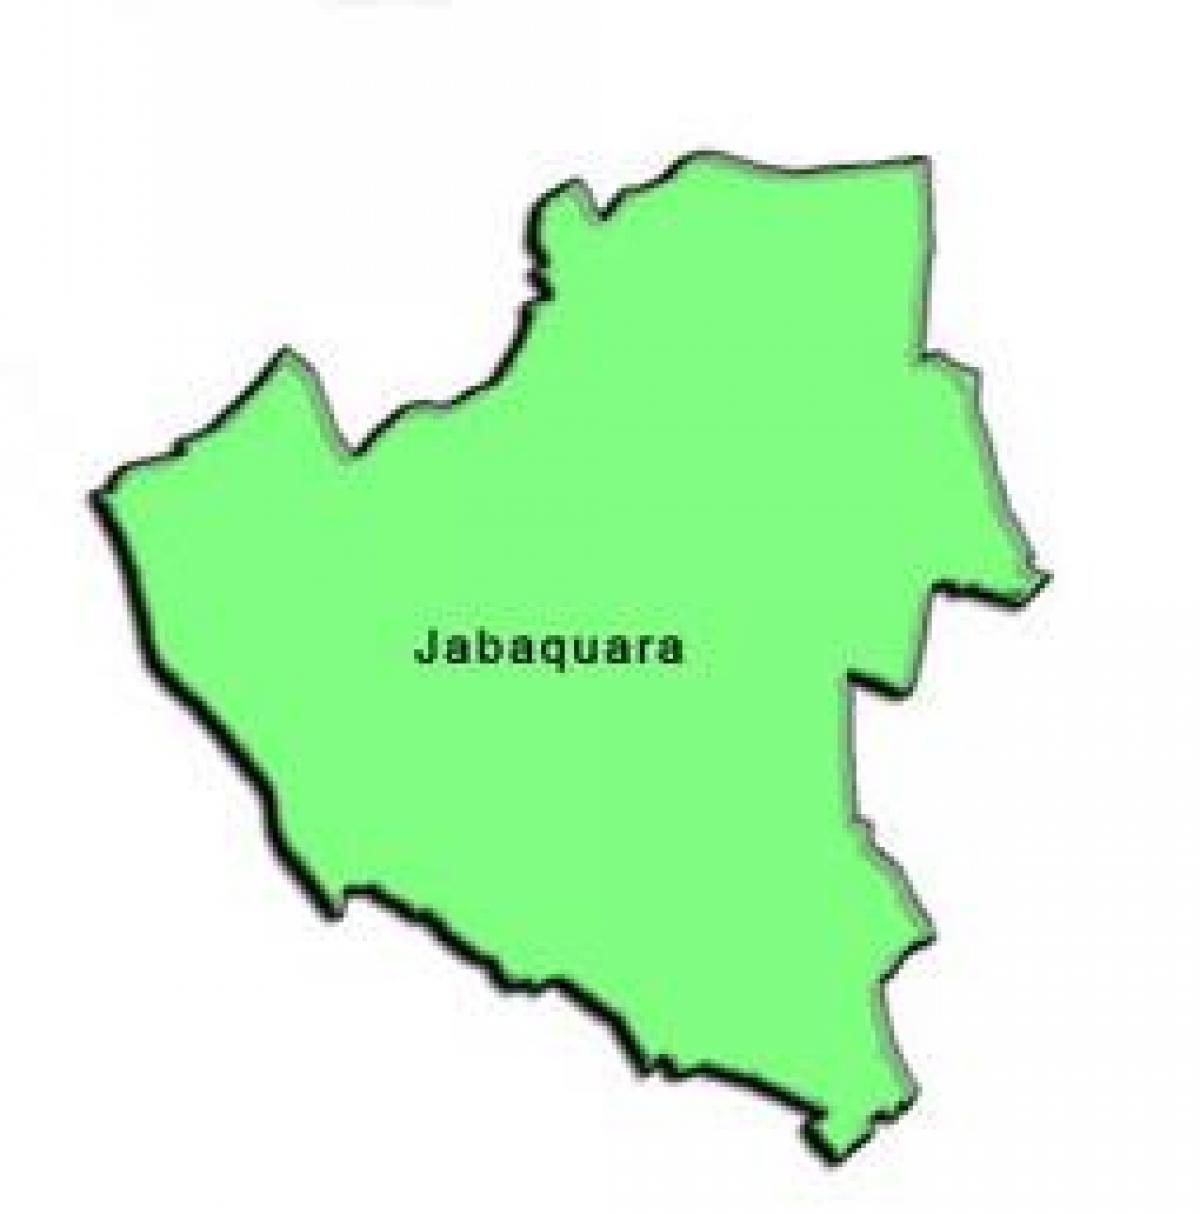 แผนที่ของ Jabaquara รายการย่อยขอ prefecture